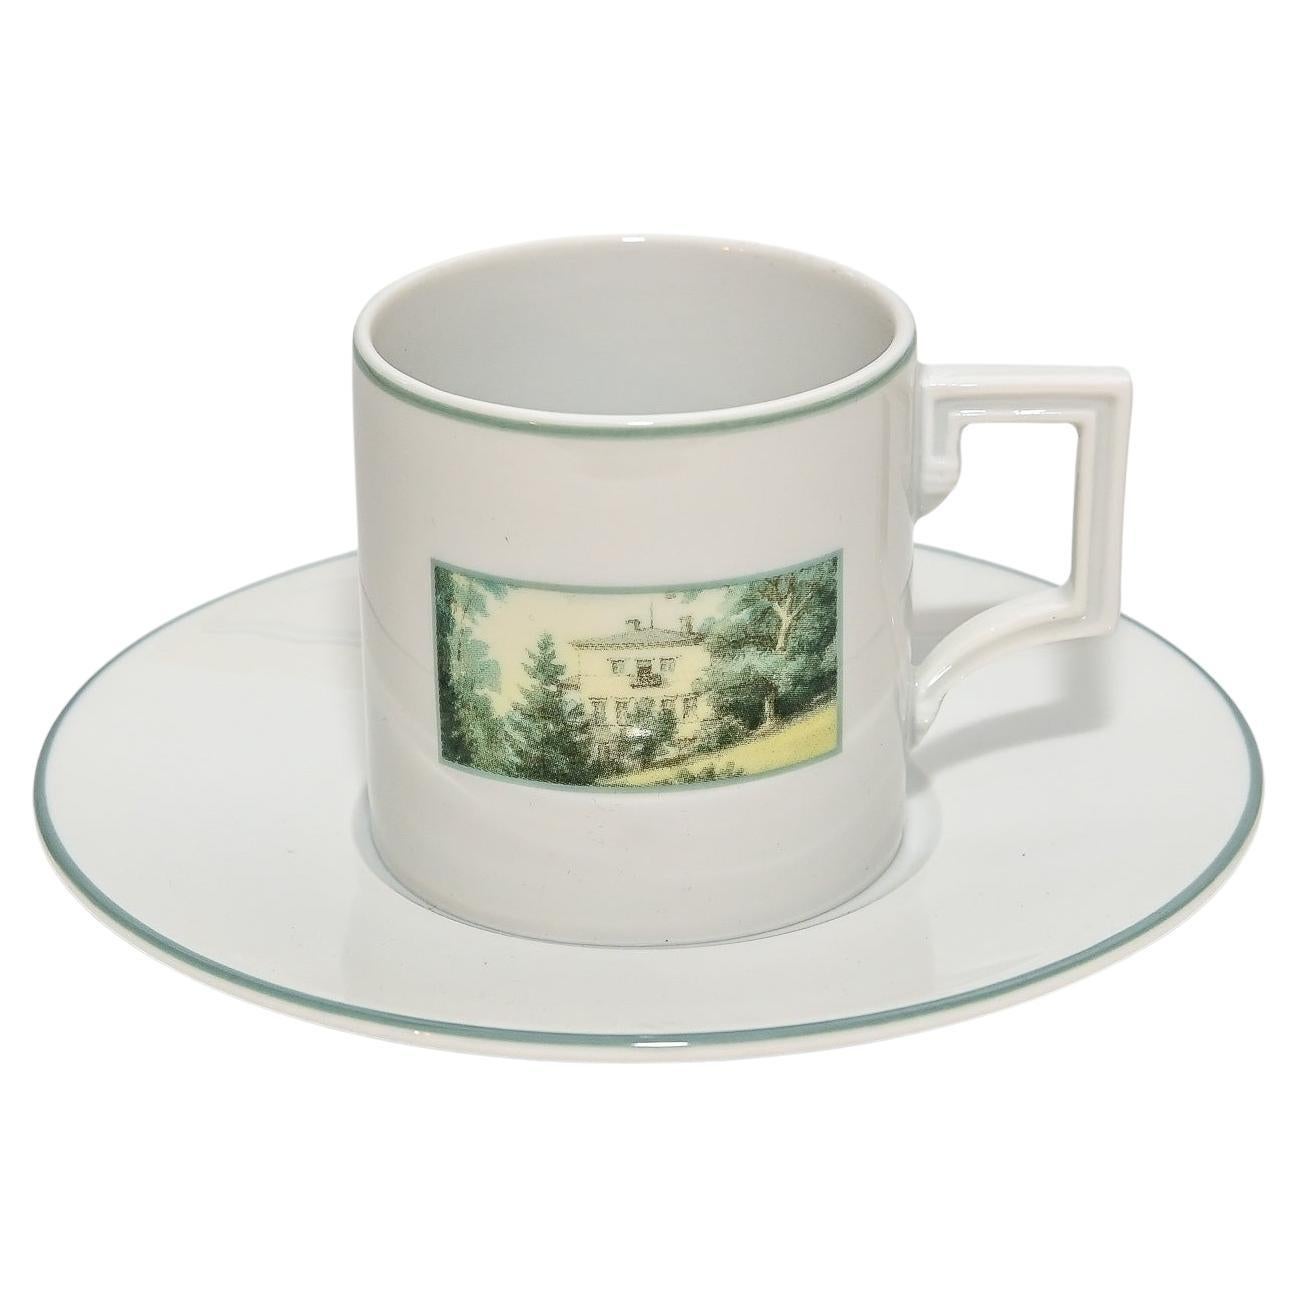 21th Century Meissen Porcelain Espressoset richard Wagner Bayreuth Fantaisie For Sale